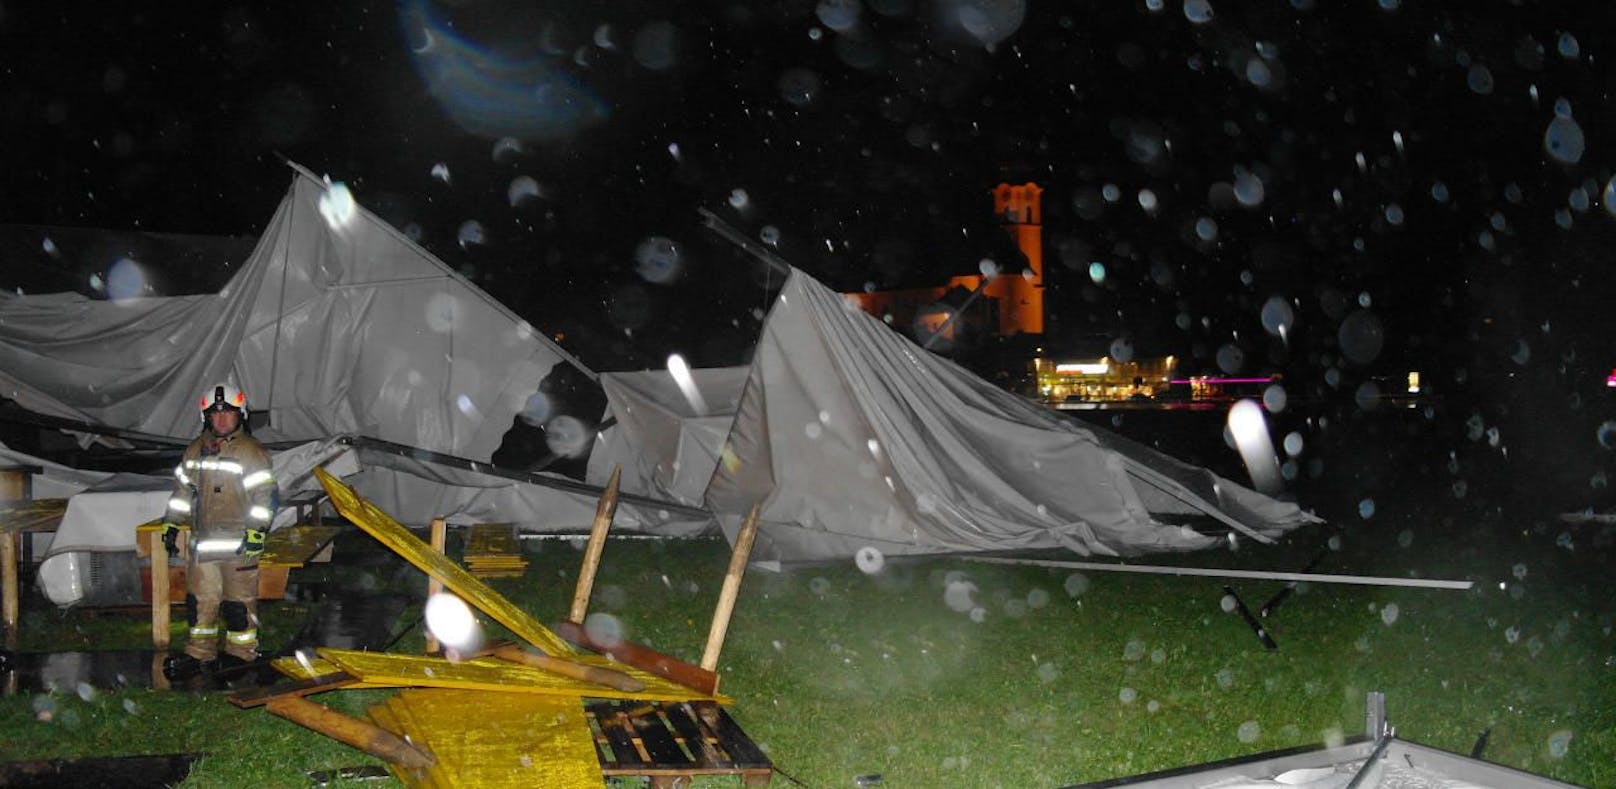 Die Zelte flogen durch die Luft und wurden schwer beschädigt